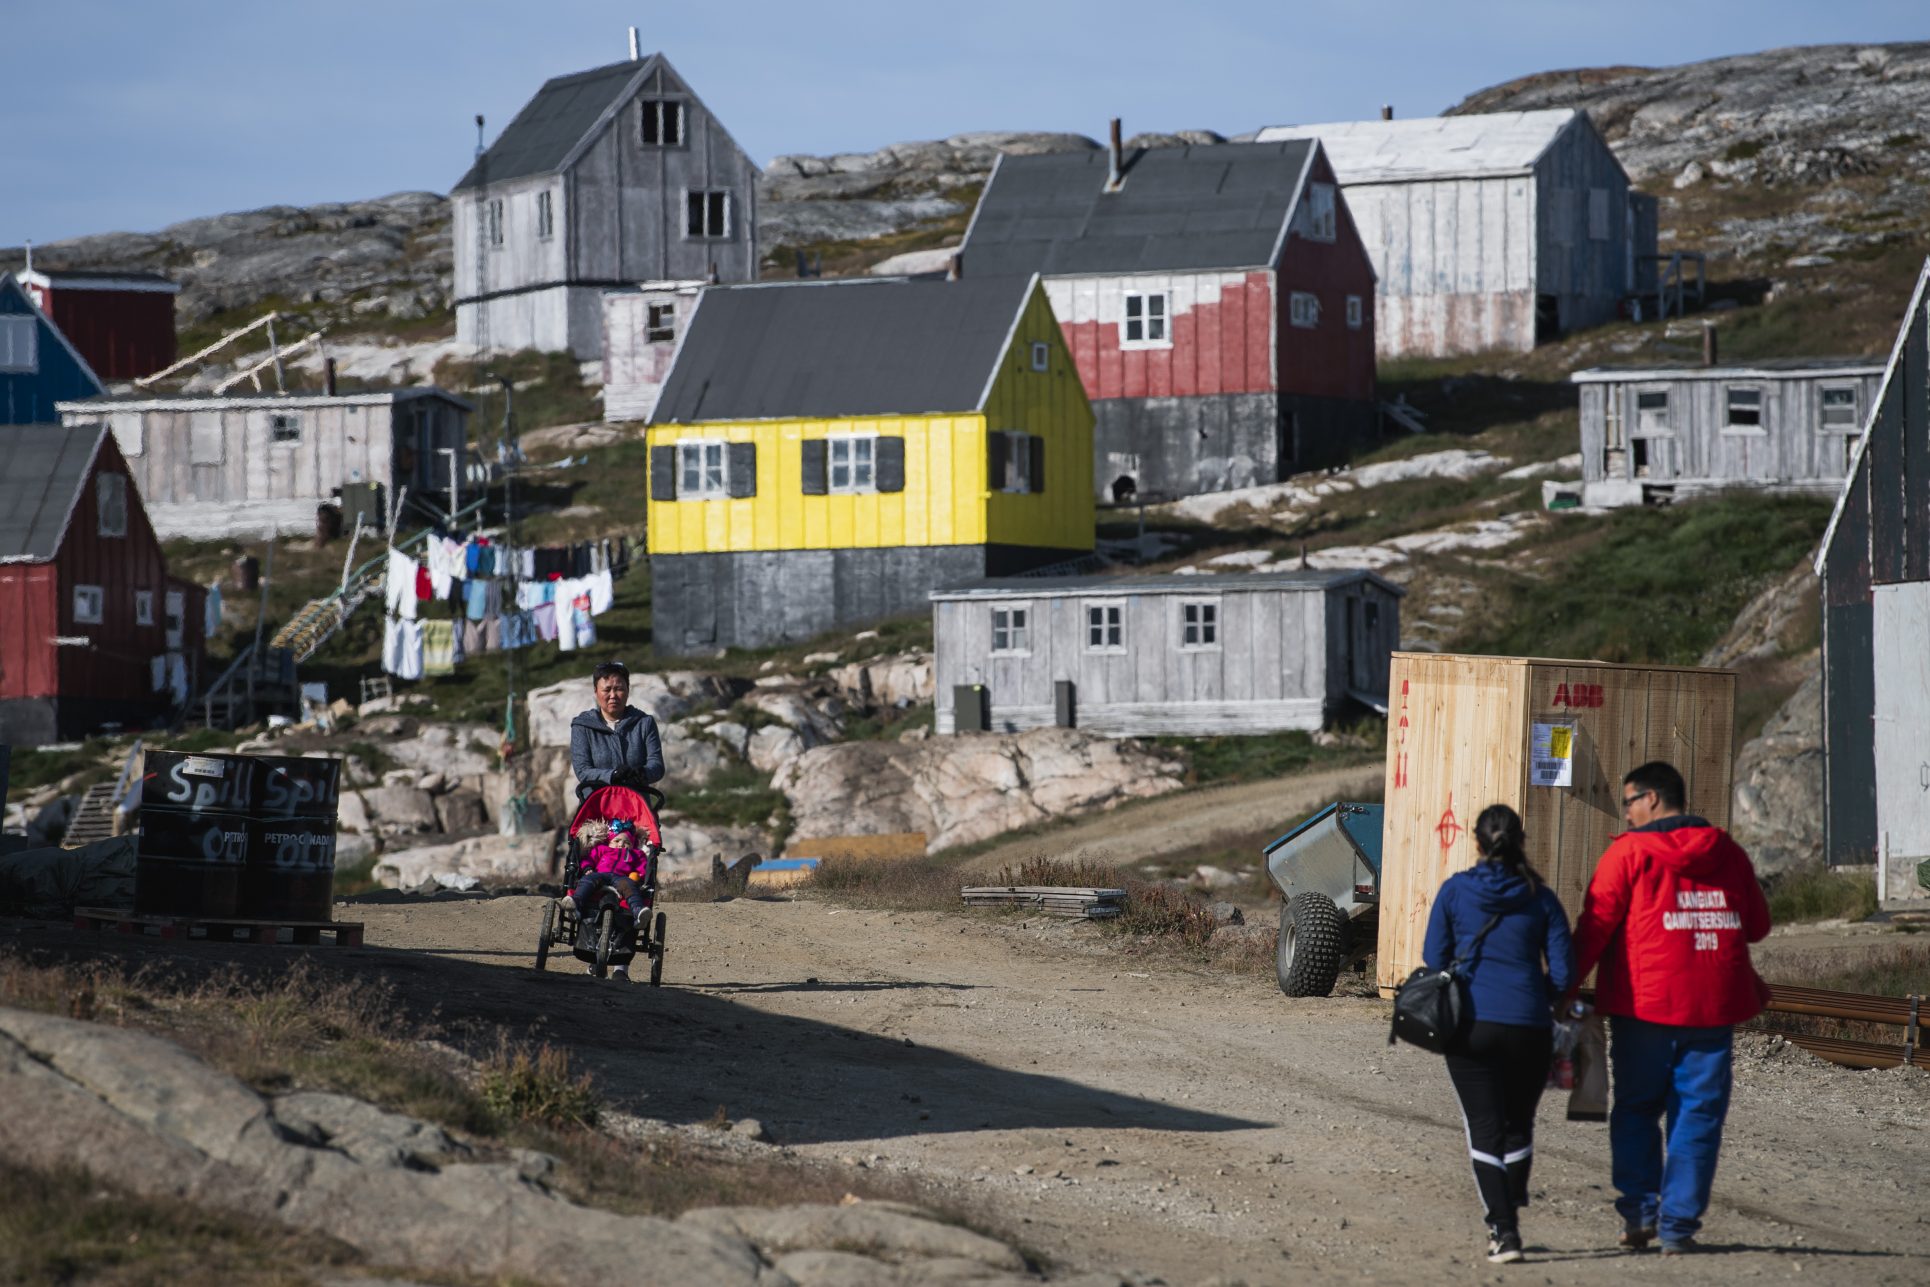 Trump confirma que le interesa “comprar Groenlandia” aunque no es una prioridad